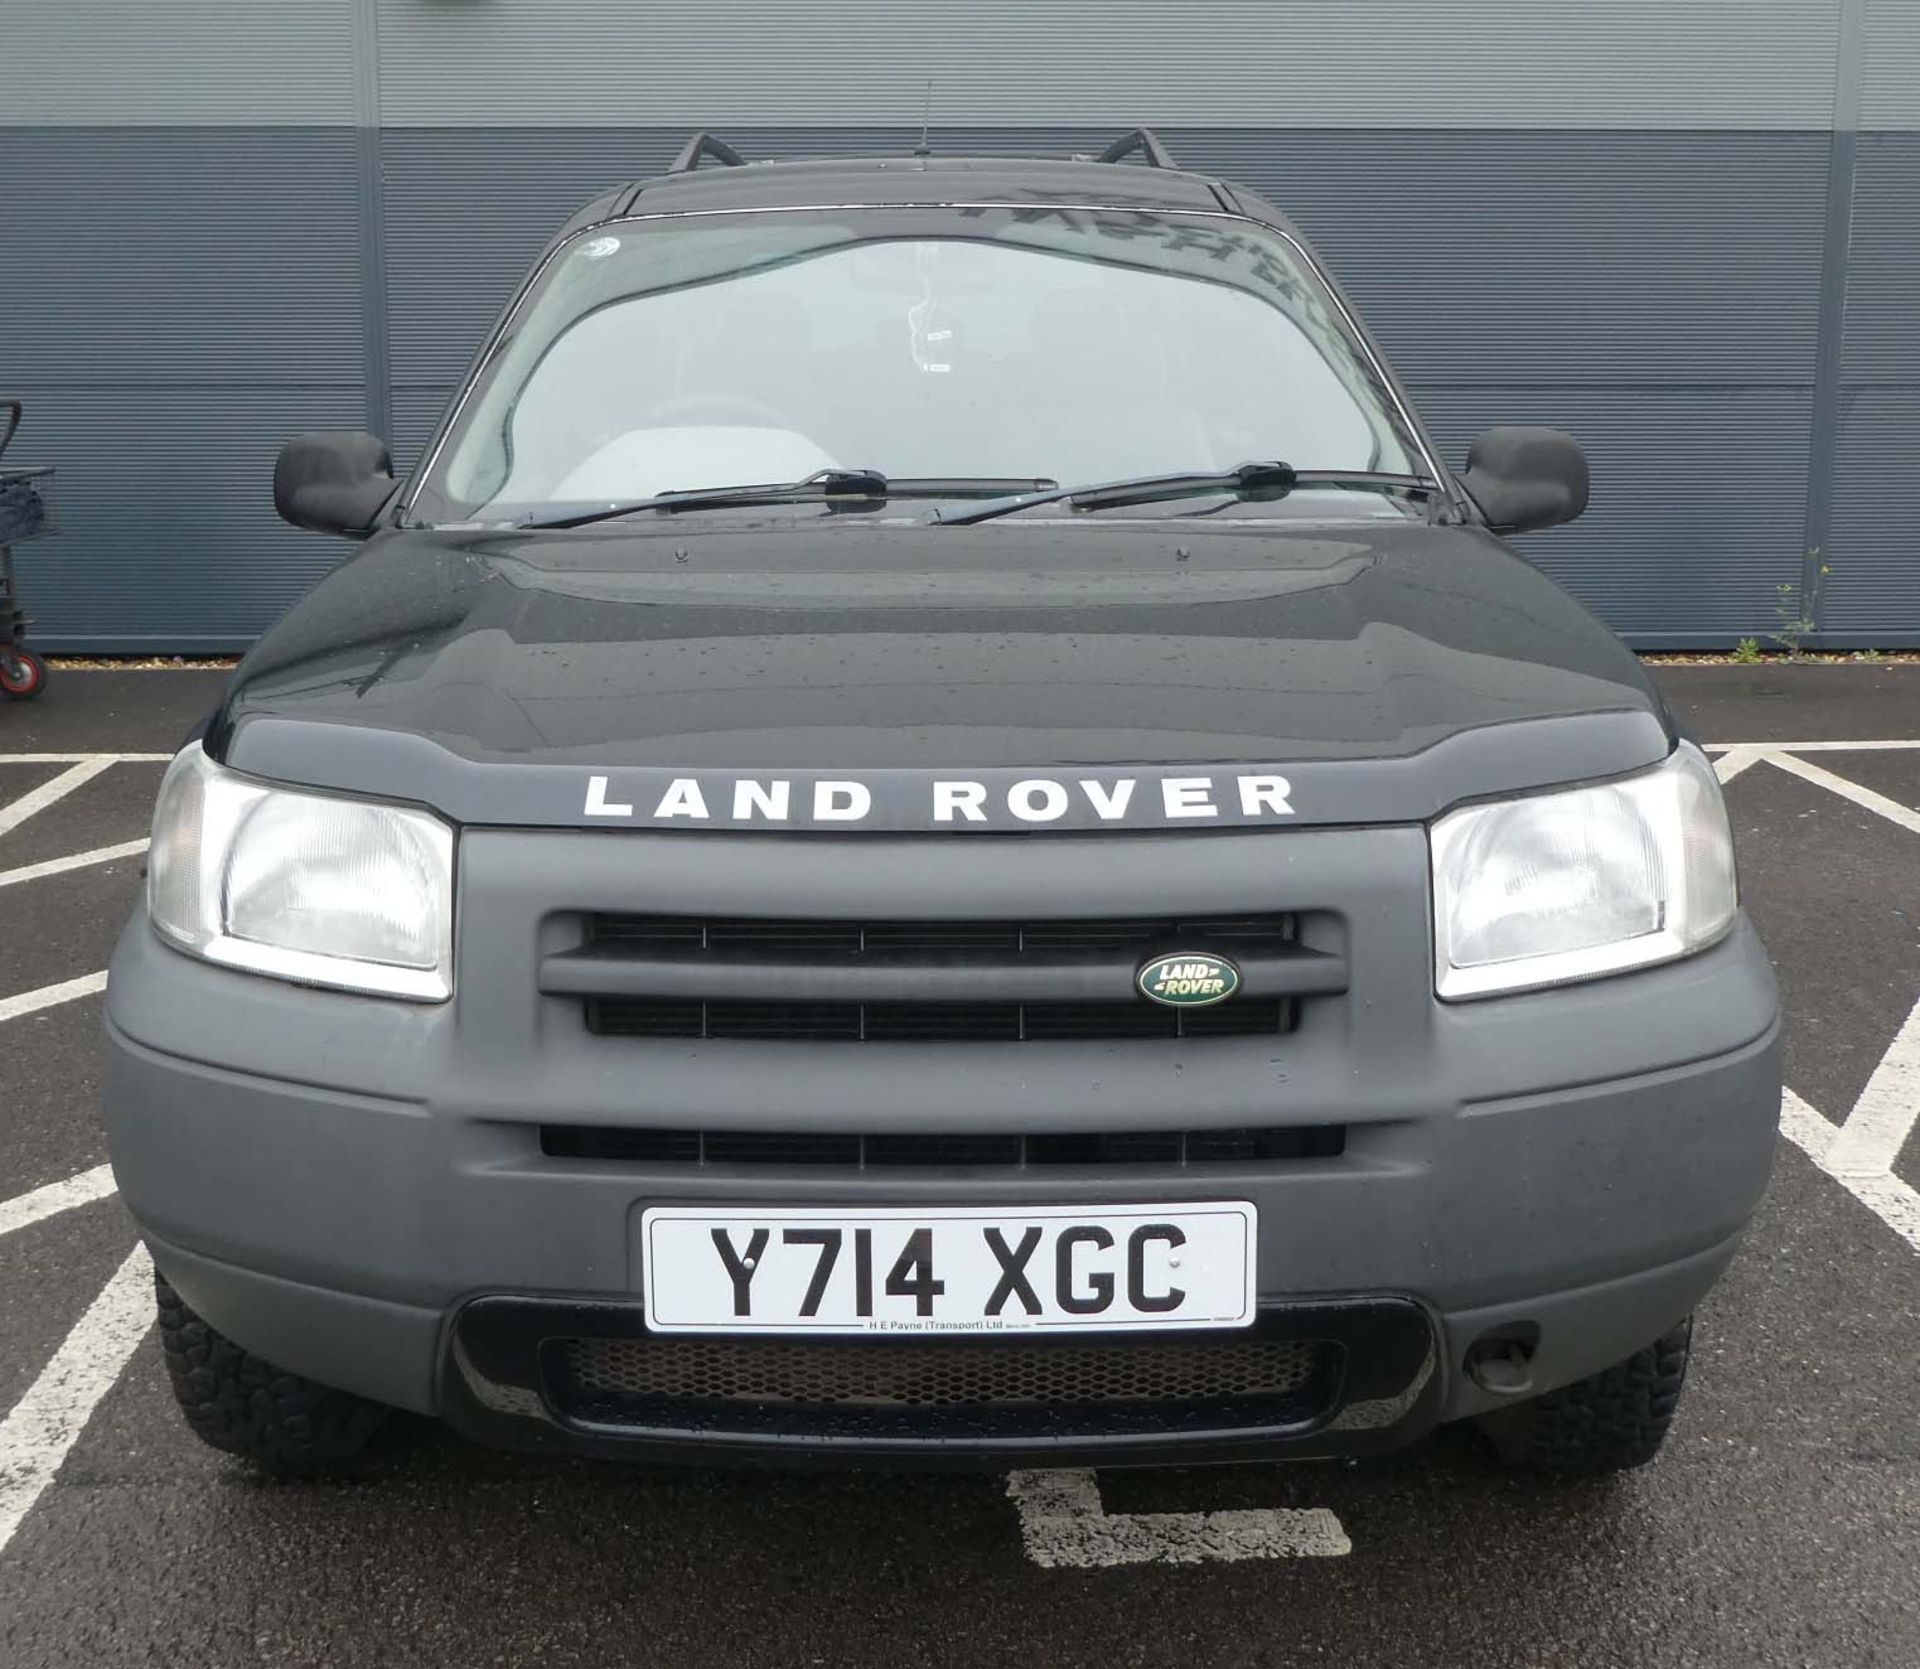 Land Rover Freelander GS Estate in black, registration plate Y714 XGC, first registered 21.03. - Image 14 of 14